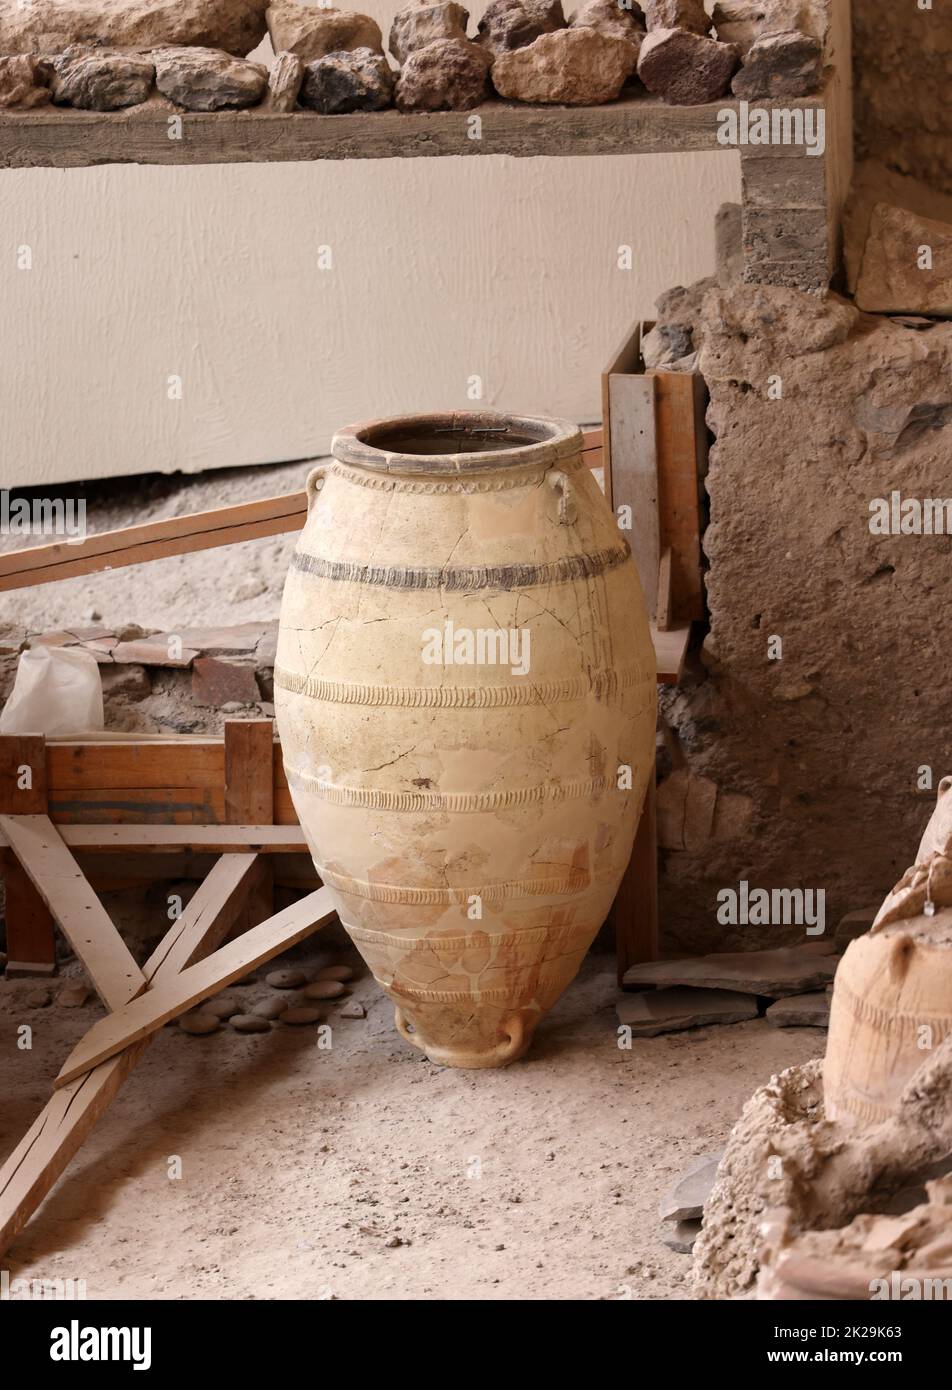 Santorini, Grèce - poterie ancienne récupérée dans la ville préhistorique d'Akrotiri, site d'excavation d'un Minoan Bronze Age Banque D'Images